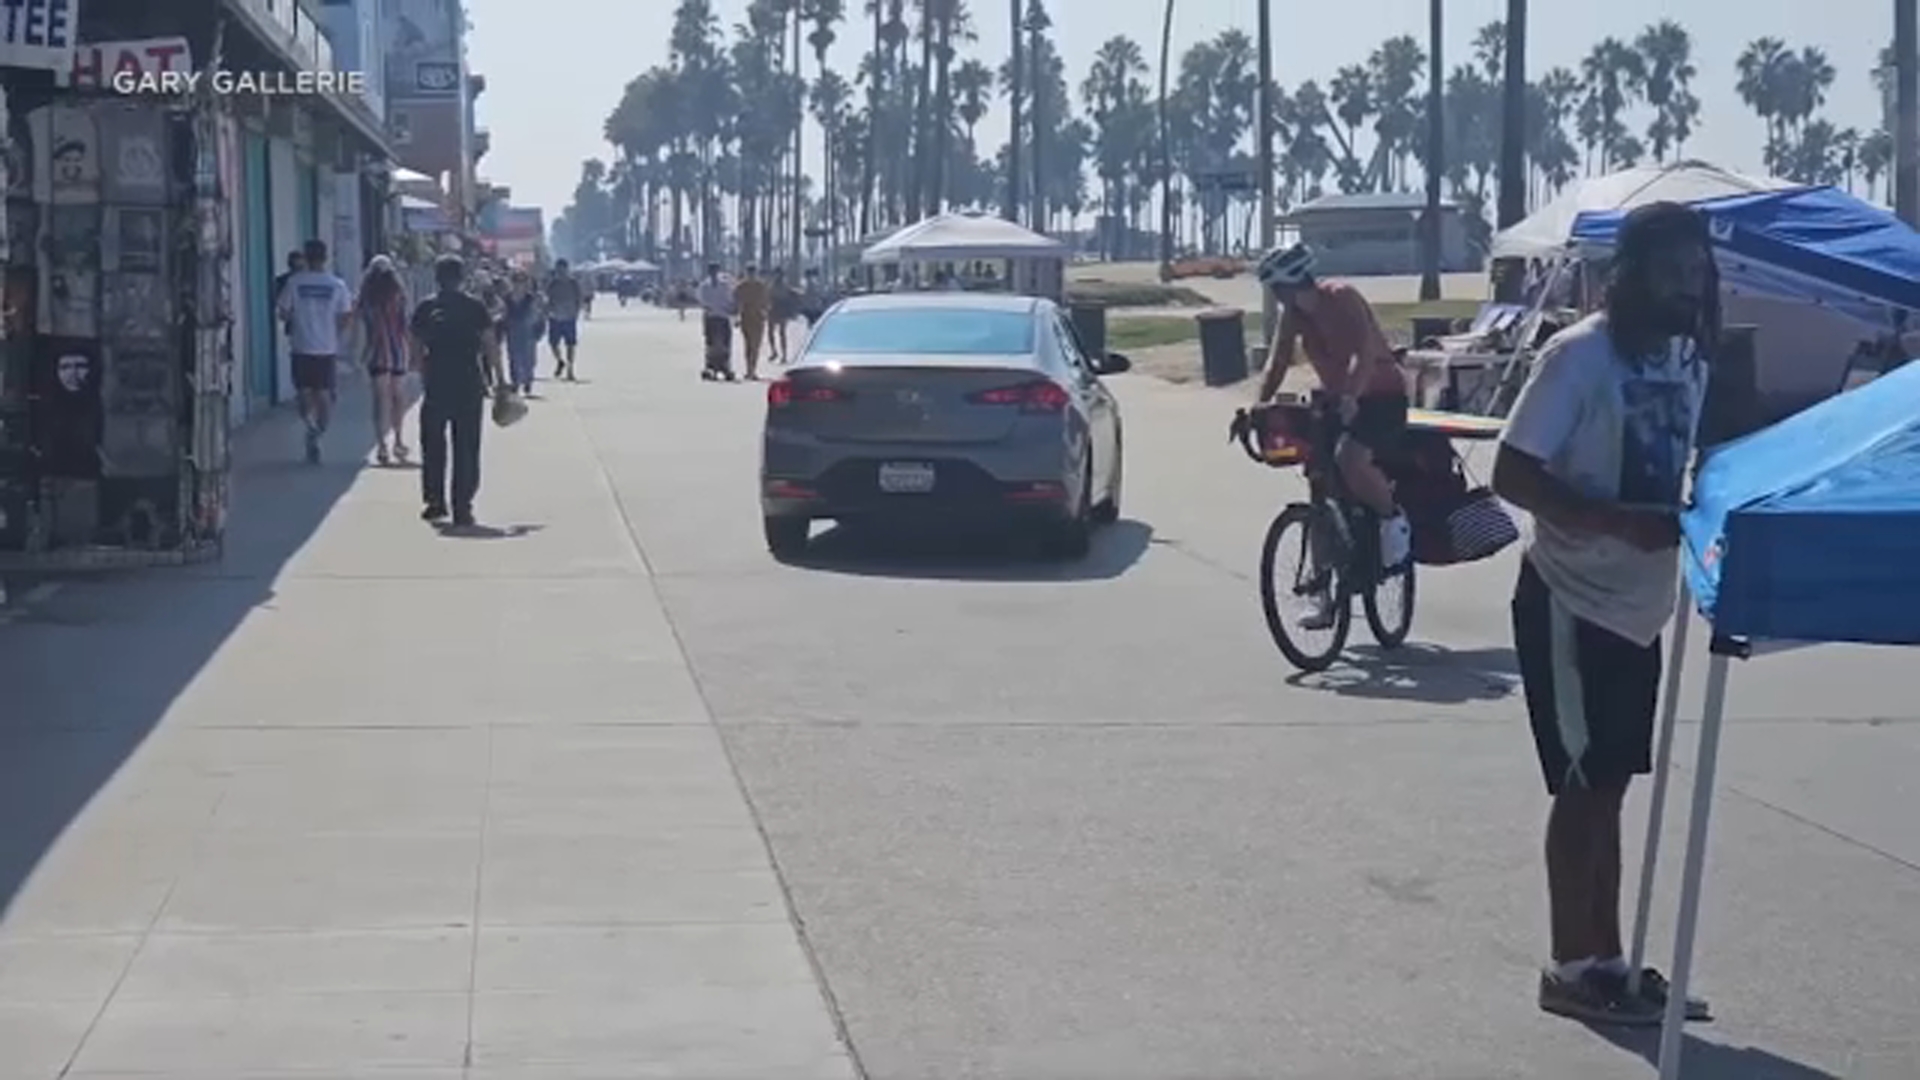 Suspected Drunk Driver Arrested After Hitting Pedestrian On Venice Boardwalk